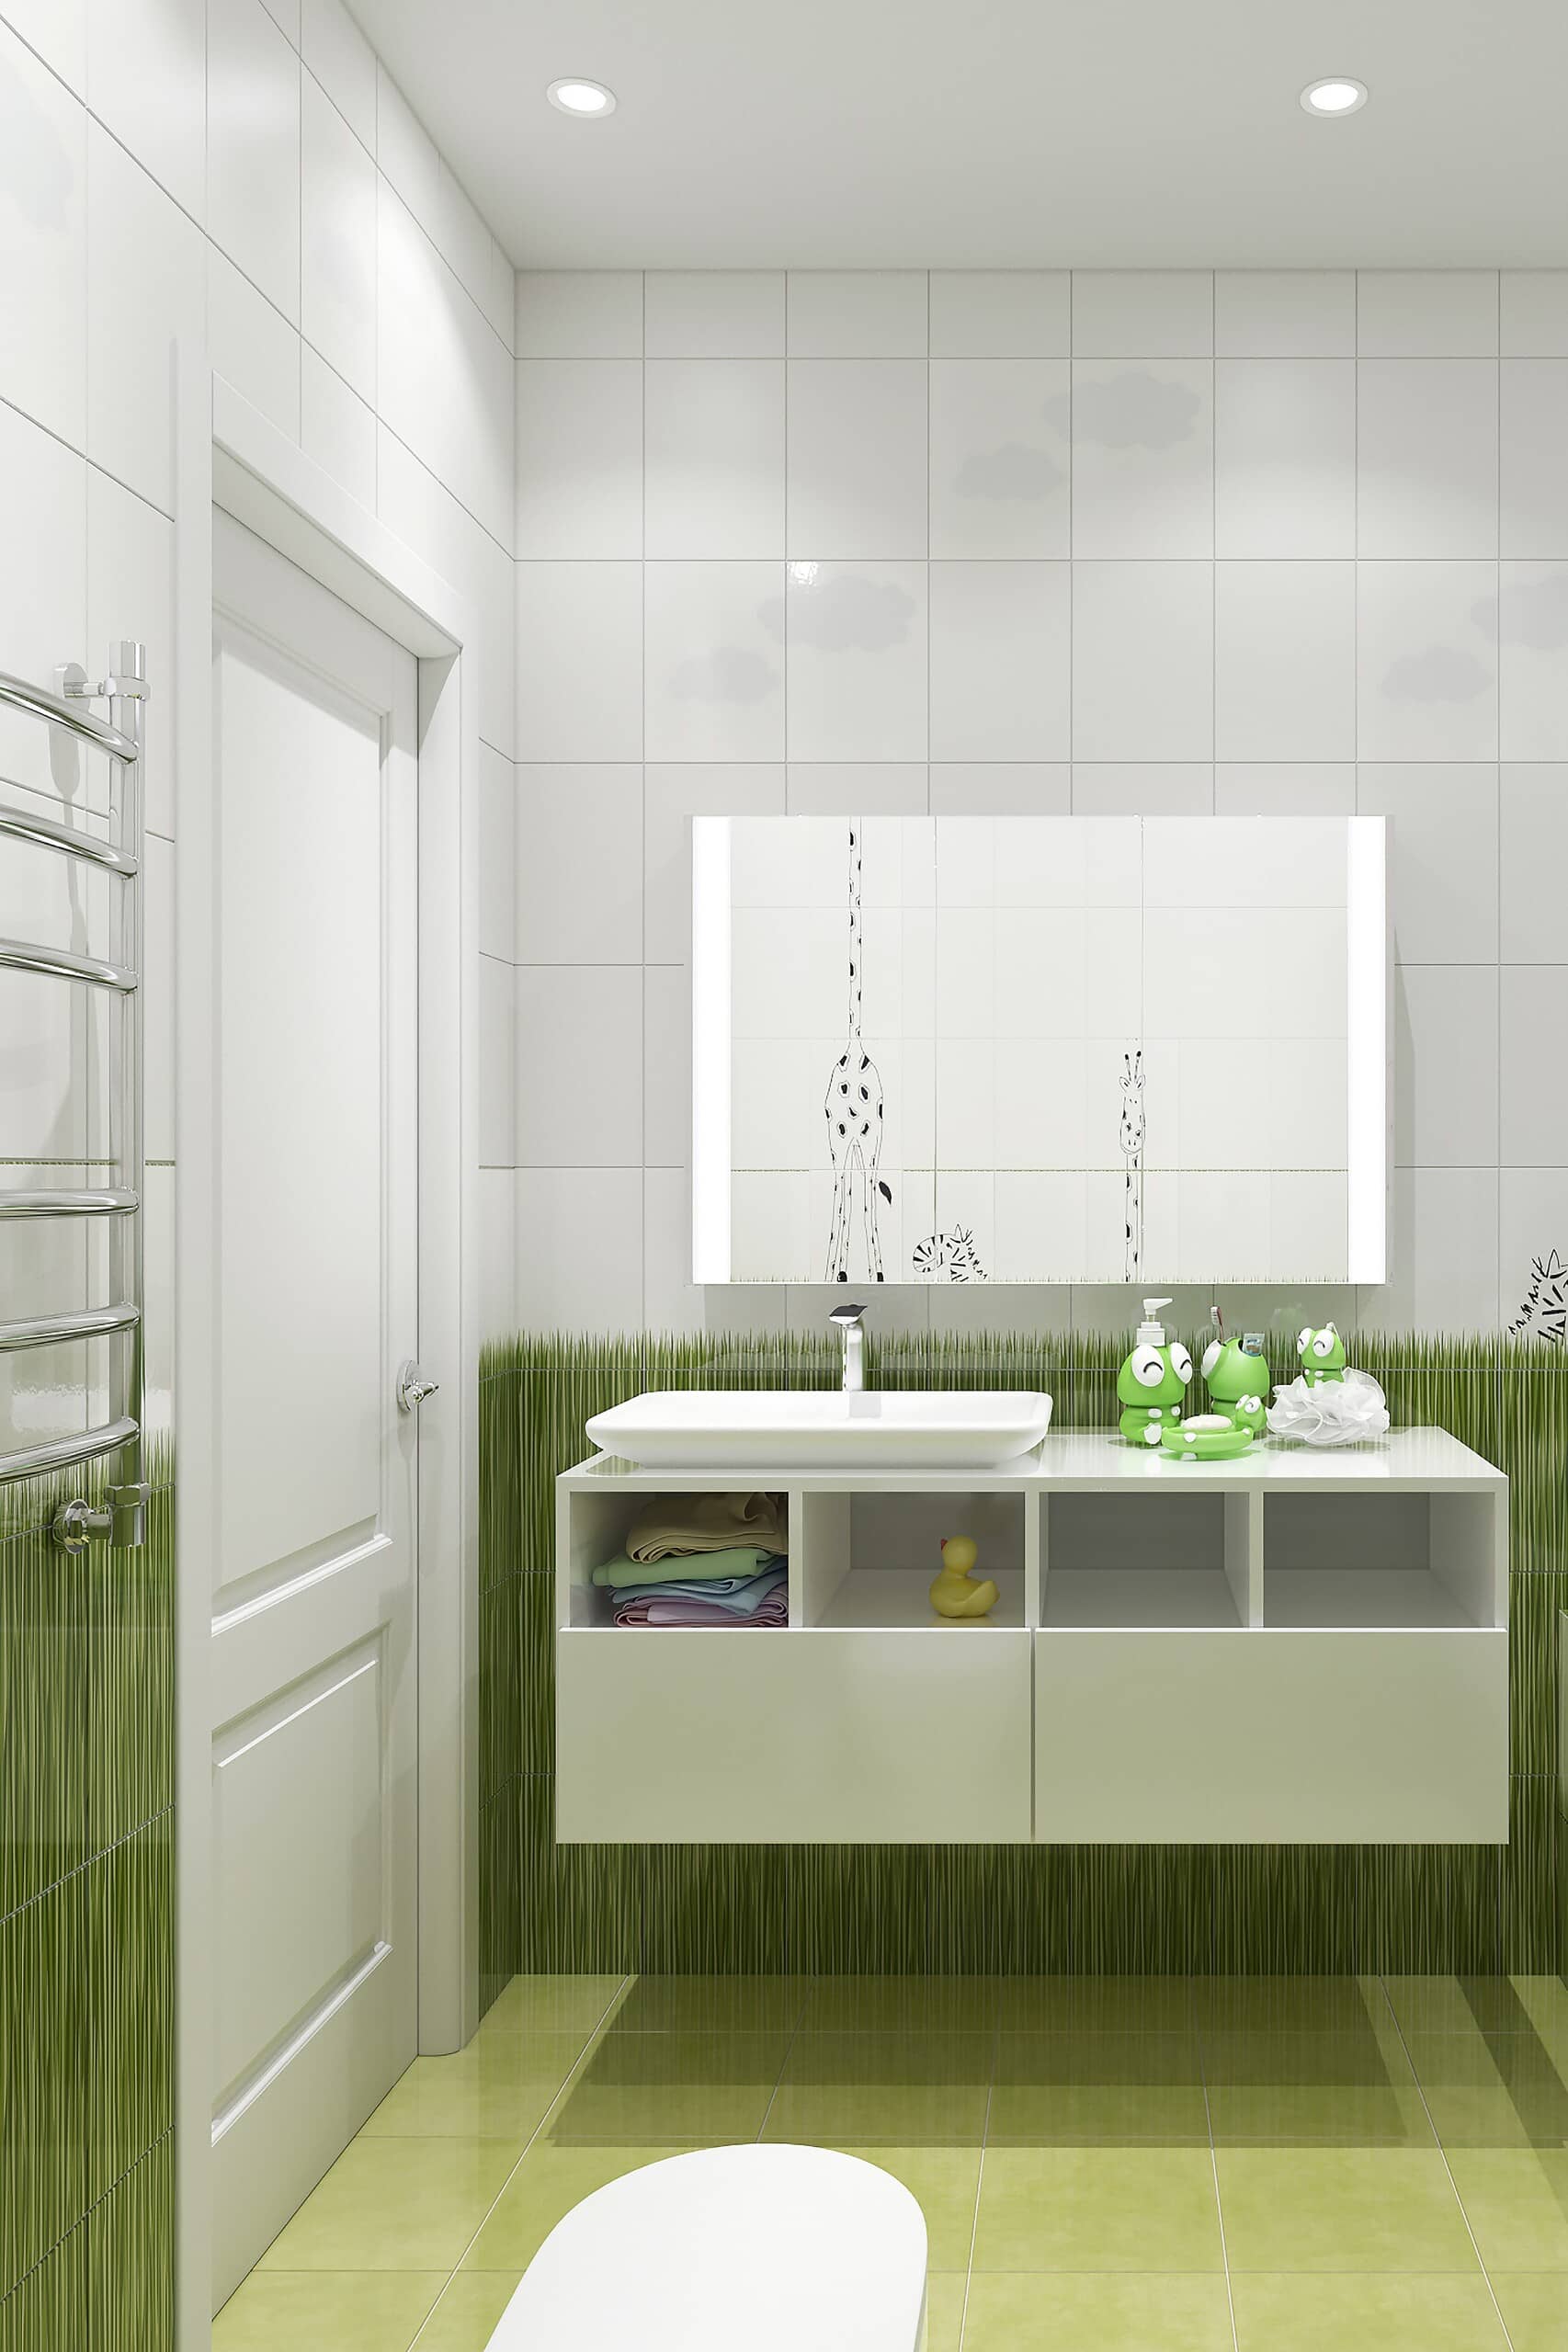 Украшения в ванной комнате светлого зелёного цвета в виде легушечек